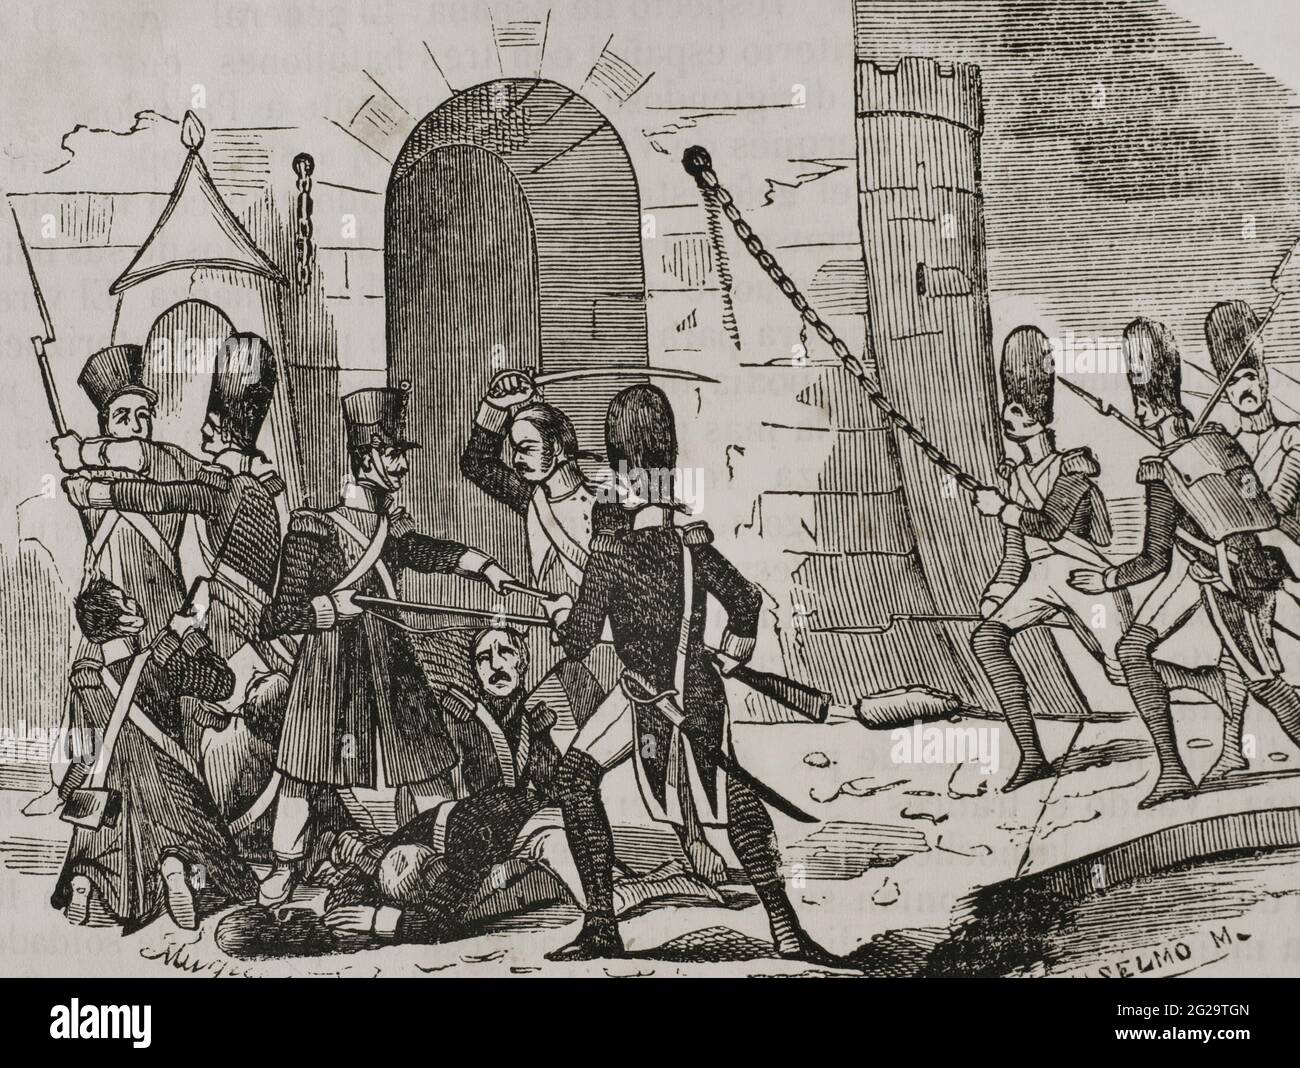 Storia della Spagna. Invasione napoleonica. Il generale d'Armagnac entrò a Pamplona il 9 febbraio 1808. Arrivò come alleato, anche se con l'obiettivo nascosto di prendere la cittadella. Intendeva alloggiare due battaglioni all'interno della cittadella, ma gli fu negato il permesso dal viceré della Navarra, il marchese di Villasantoro. Dopo il divieto, il 16 febbraio, utilizzando i soldati che andavano alla cittadella all'alba ogni giorno per raccogliere il pane per le truppe e un piccolo gruppo di soldati selezionati, riuscirono a prendere il controllo della fortezza con l'aiuto di due compagnie di granatieri. Sorpresa della Cittadella di Pamplona. Engravin Foto Stock